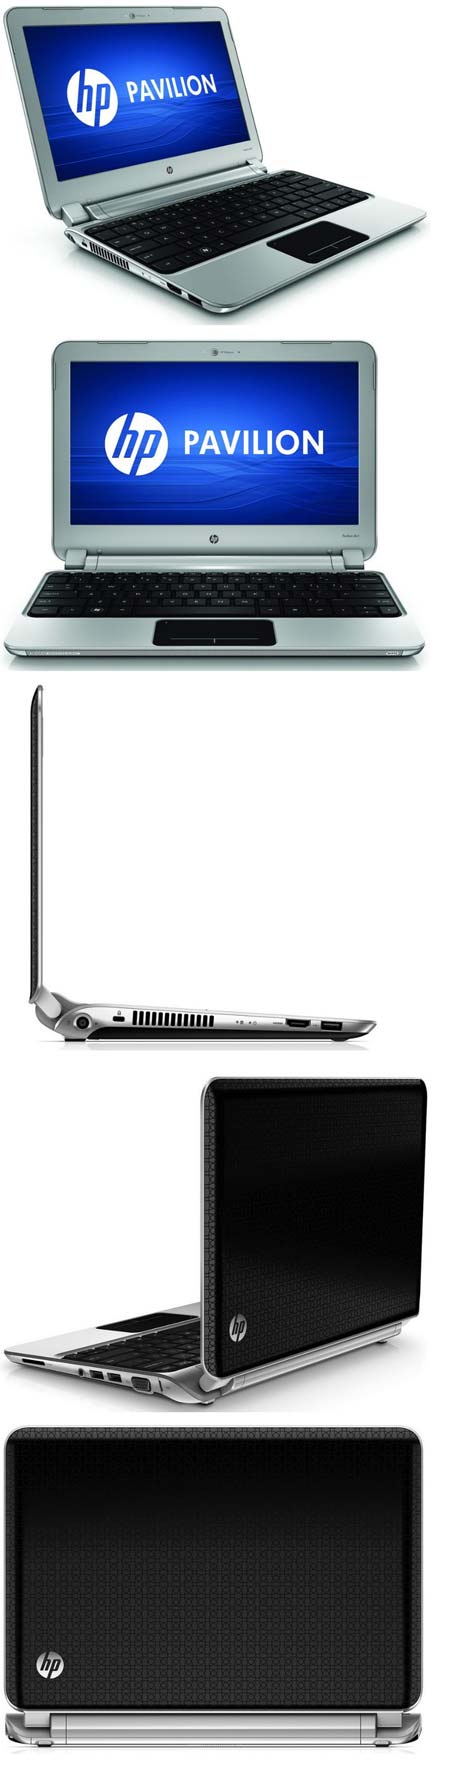 Новый симпатичный ноутбук от HP - Pavilion dm 1-3010nr